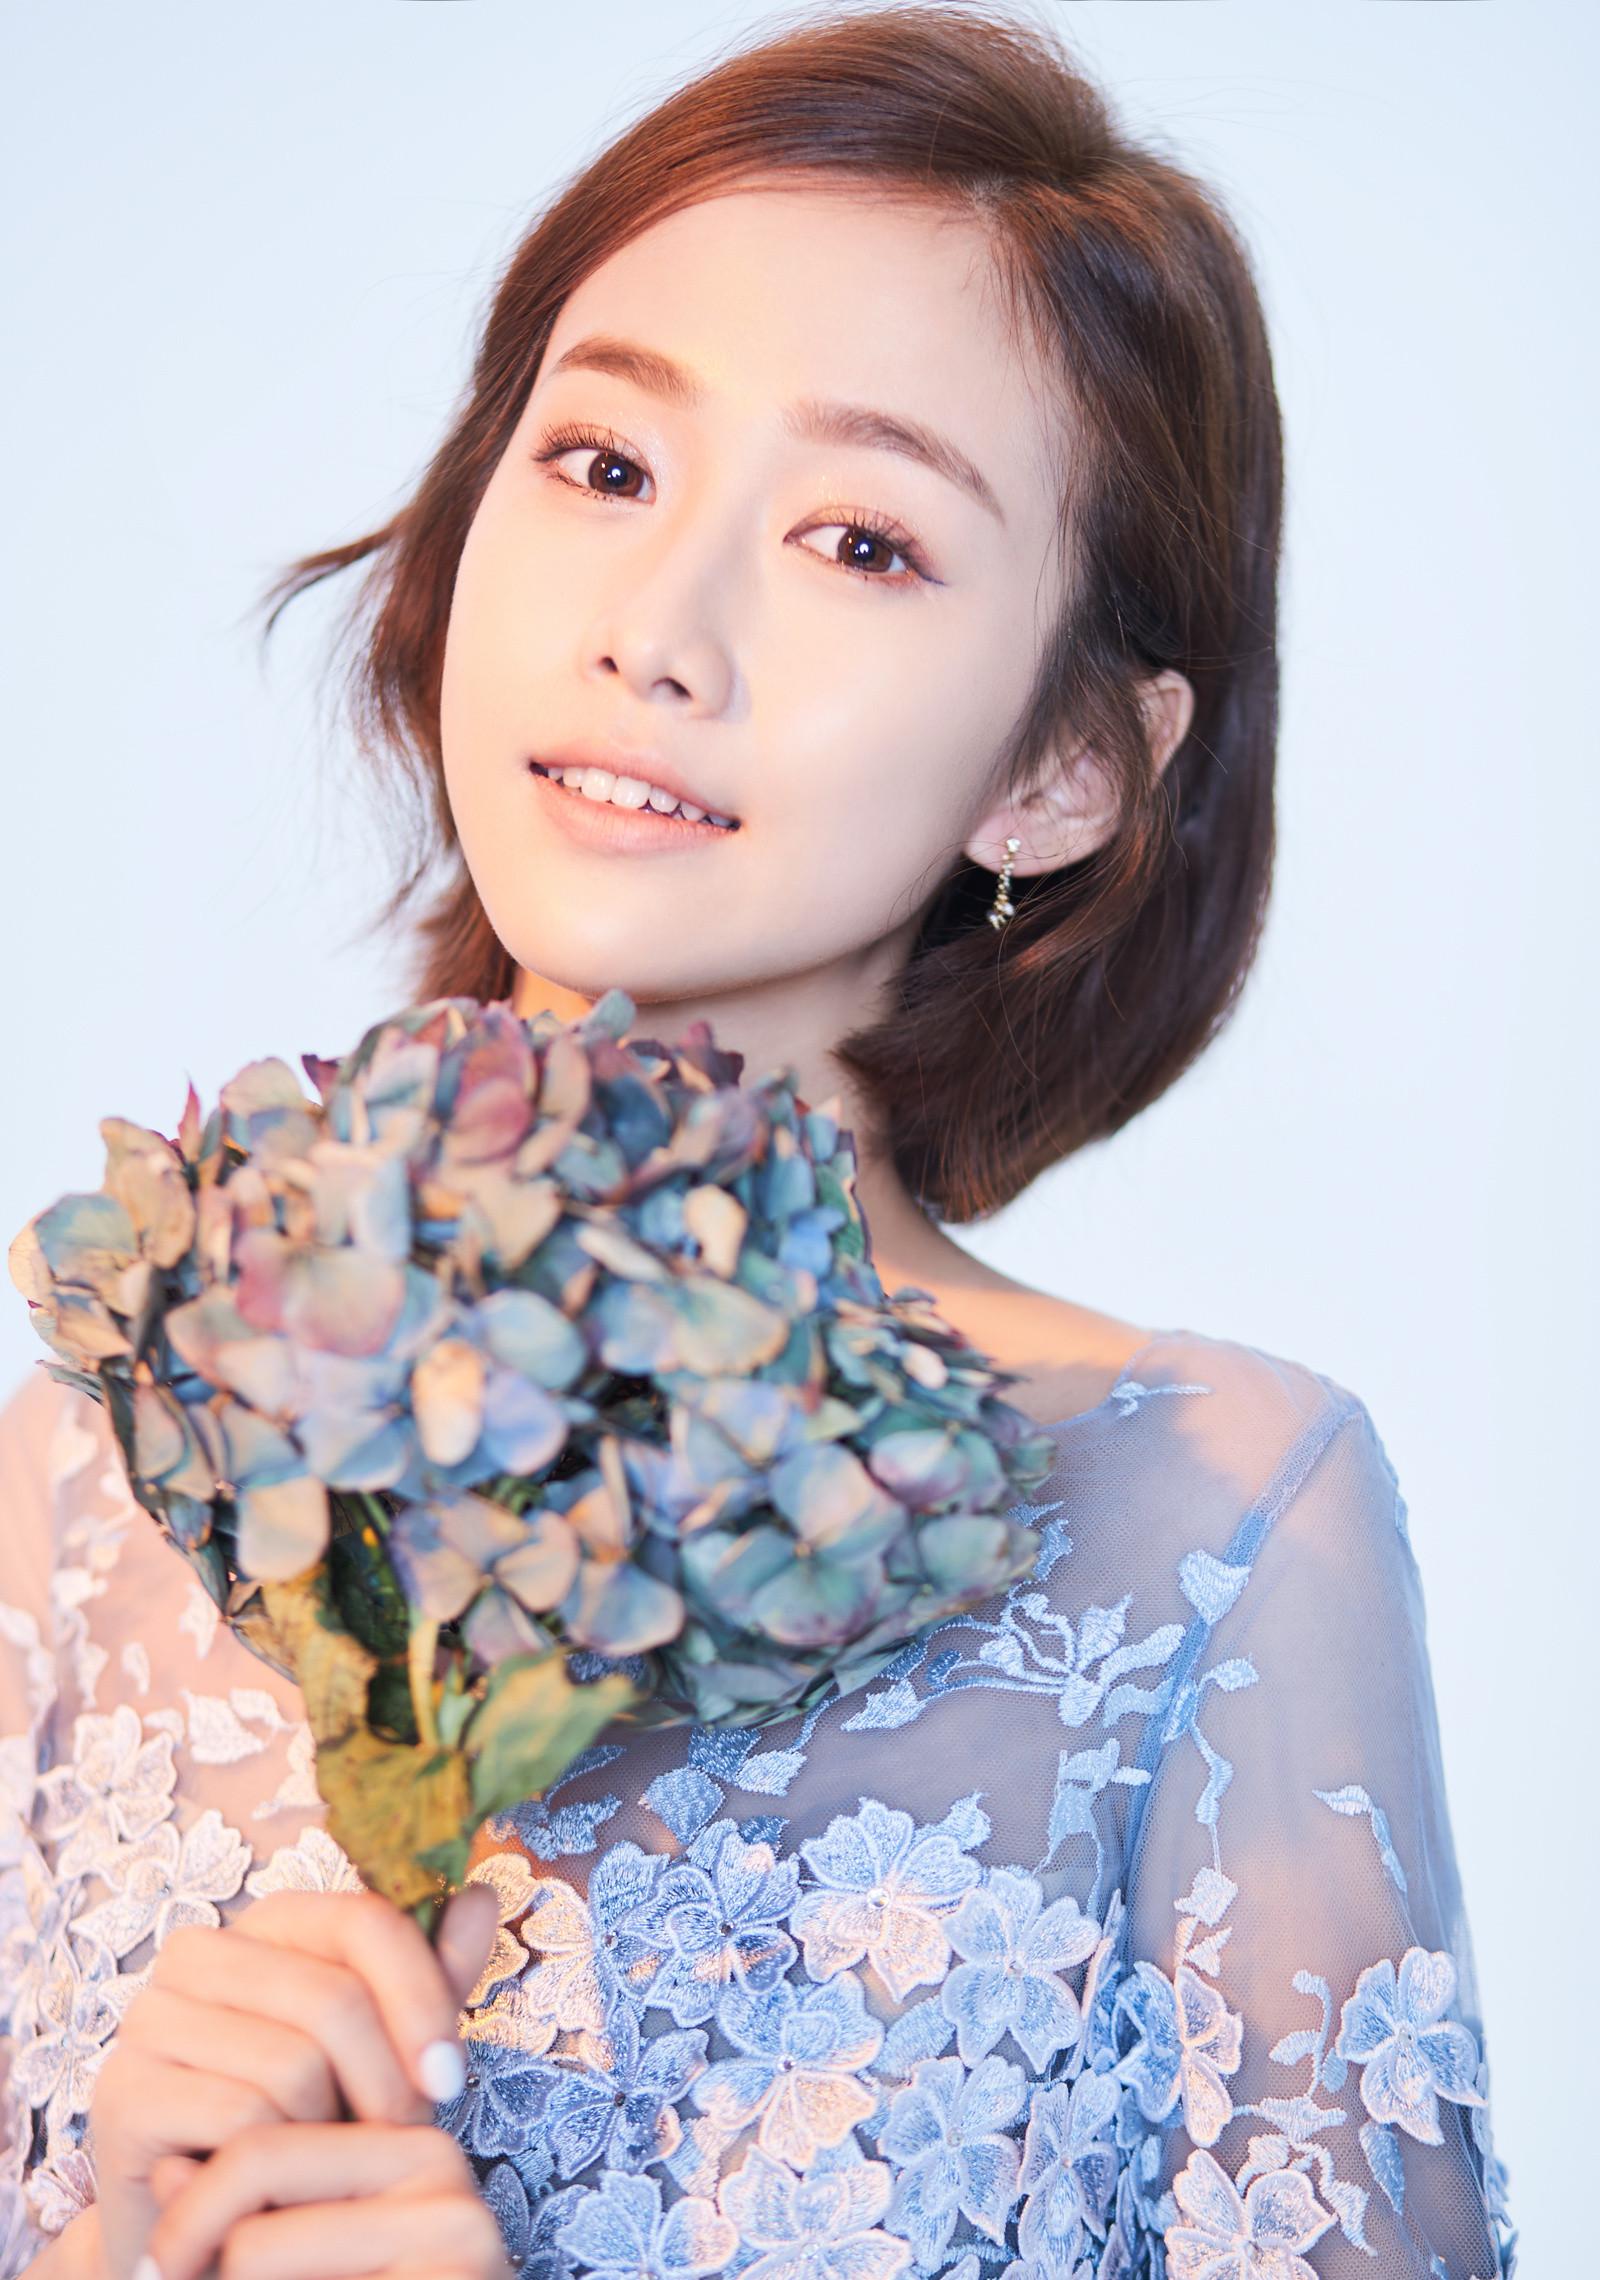 中国青年女演员、歌手刘美含